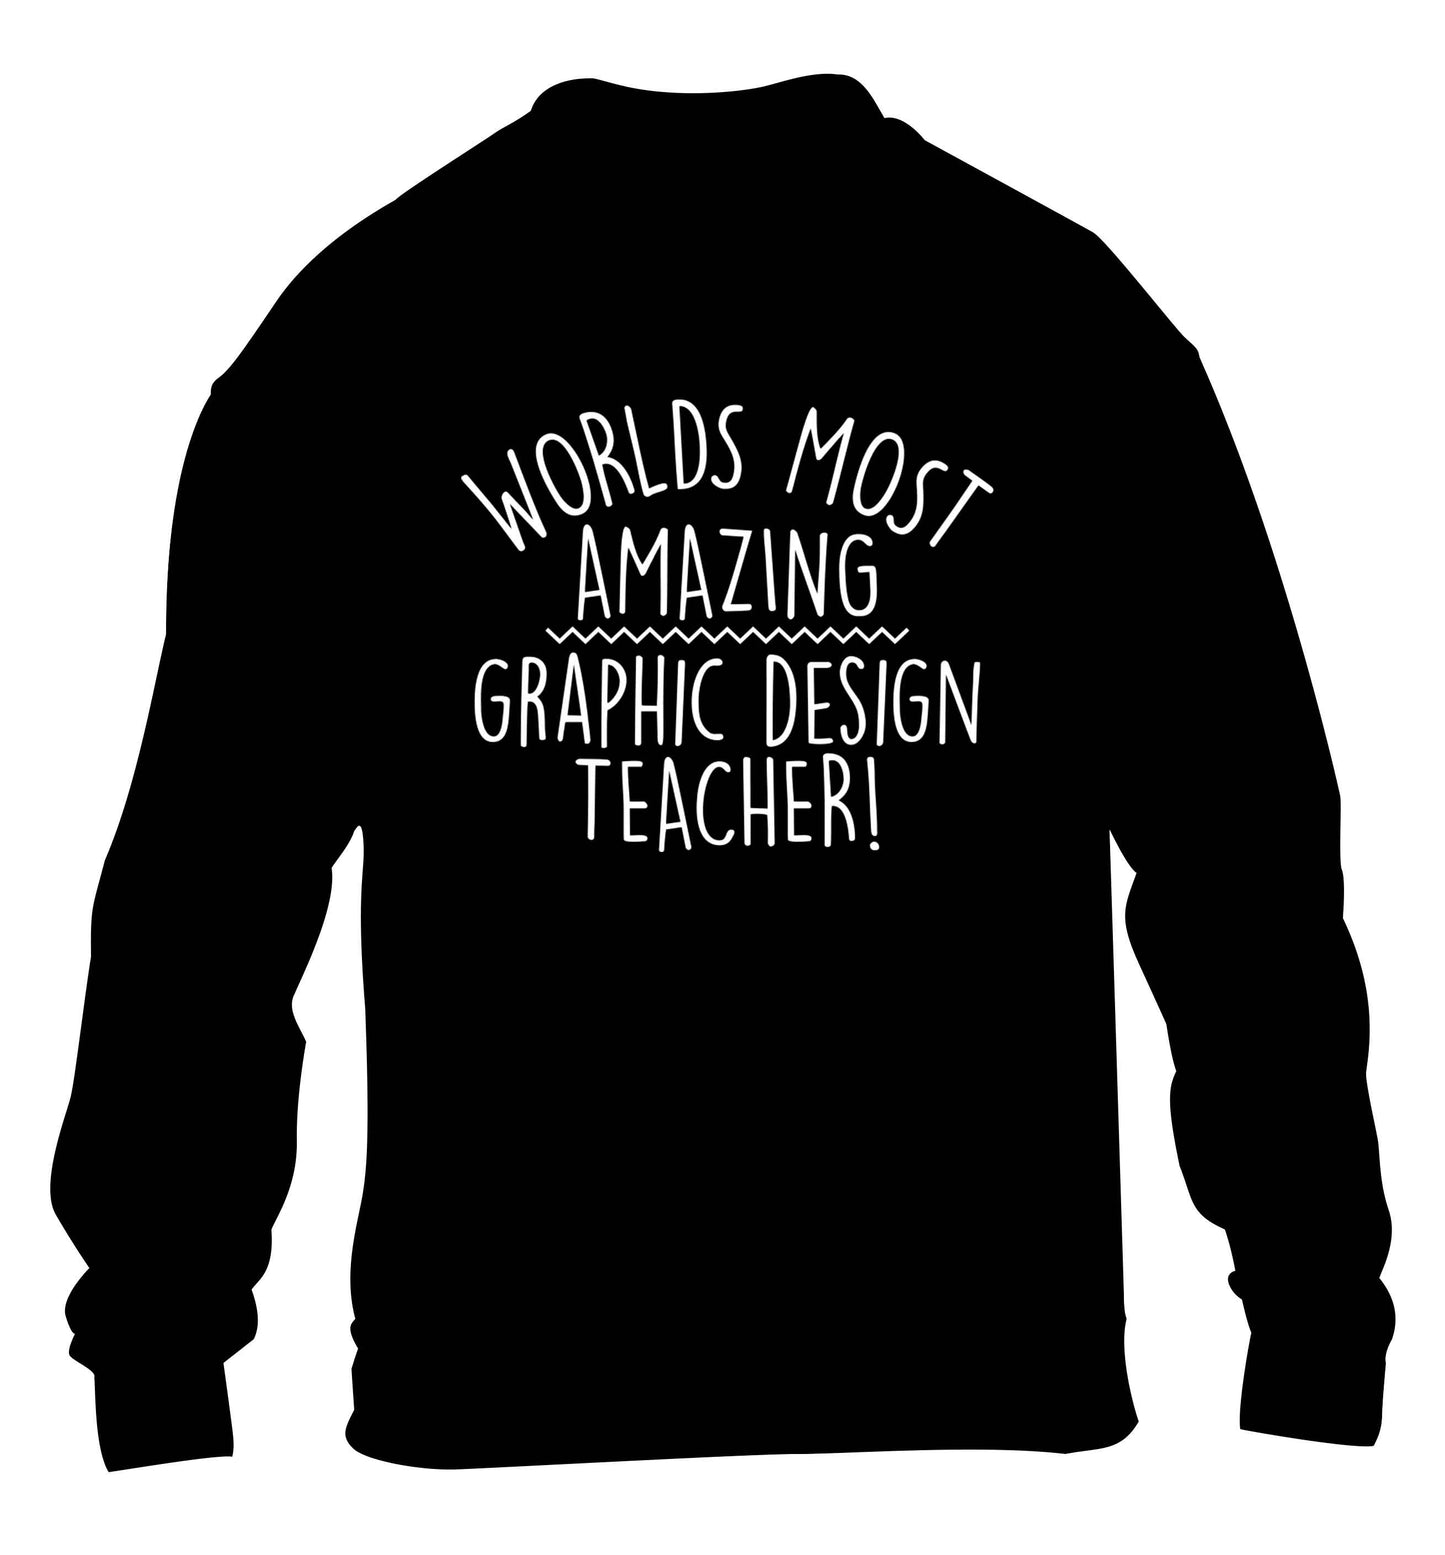 Worlds most amazing graphic design teacher children's black sweater 12-13 Years